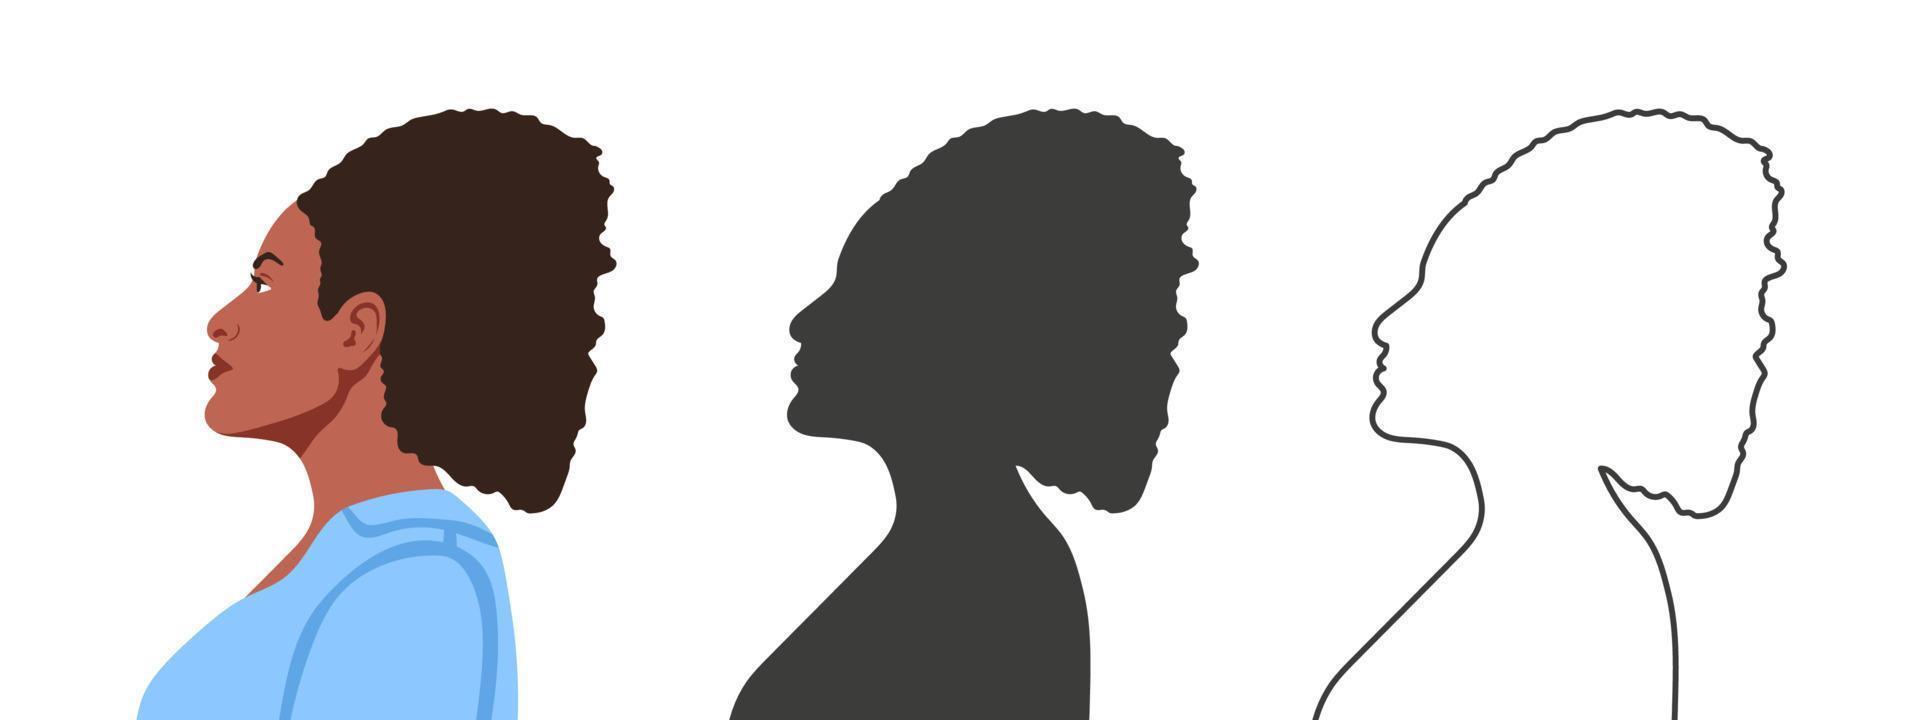 vrouw gezicht van de kant. silhouetten van mensen in drie verschillend stijlen. profiel van een gezicht. vector illustratie